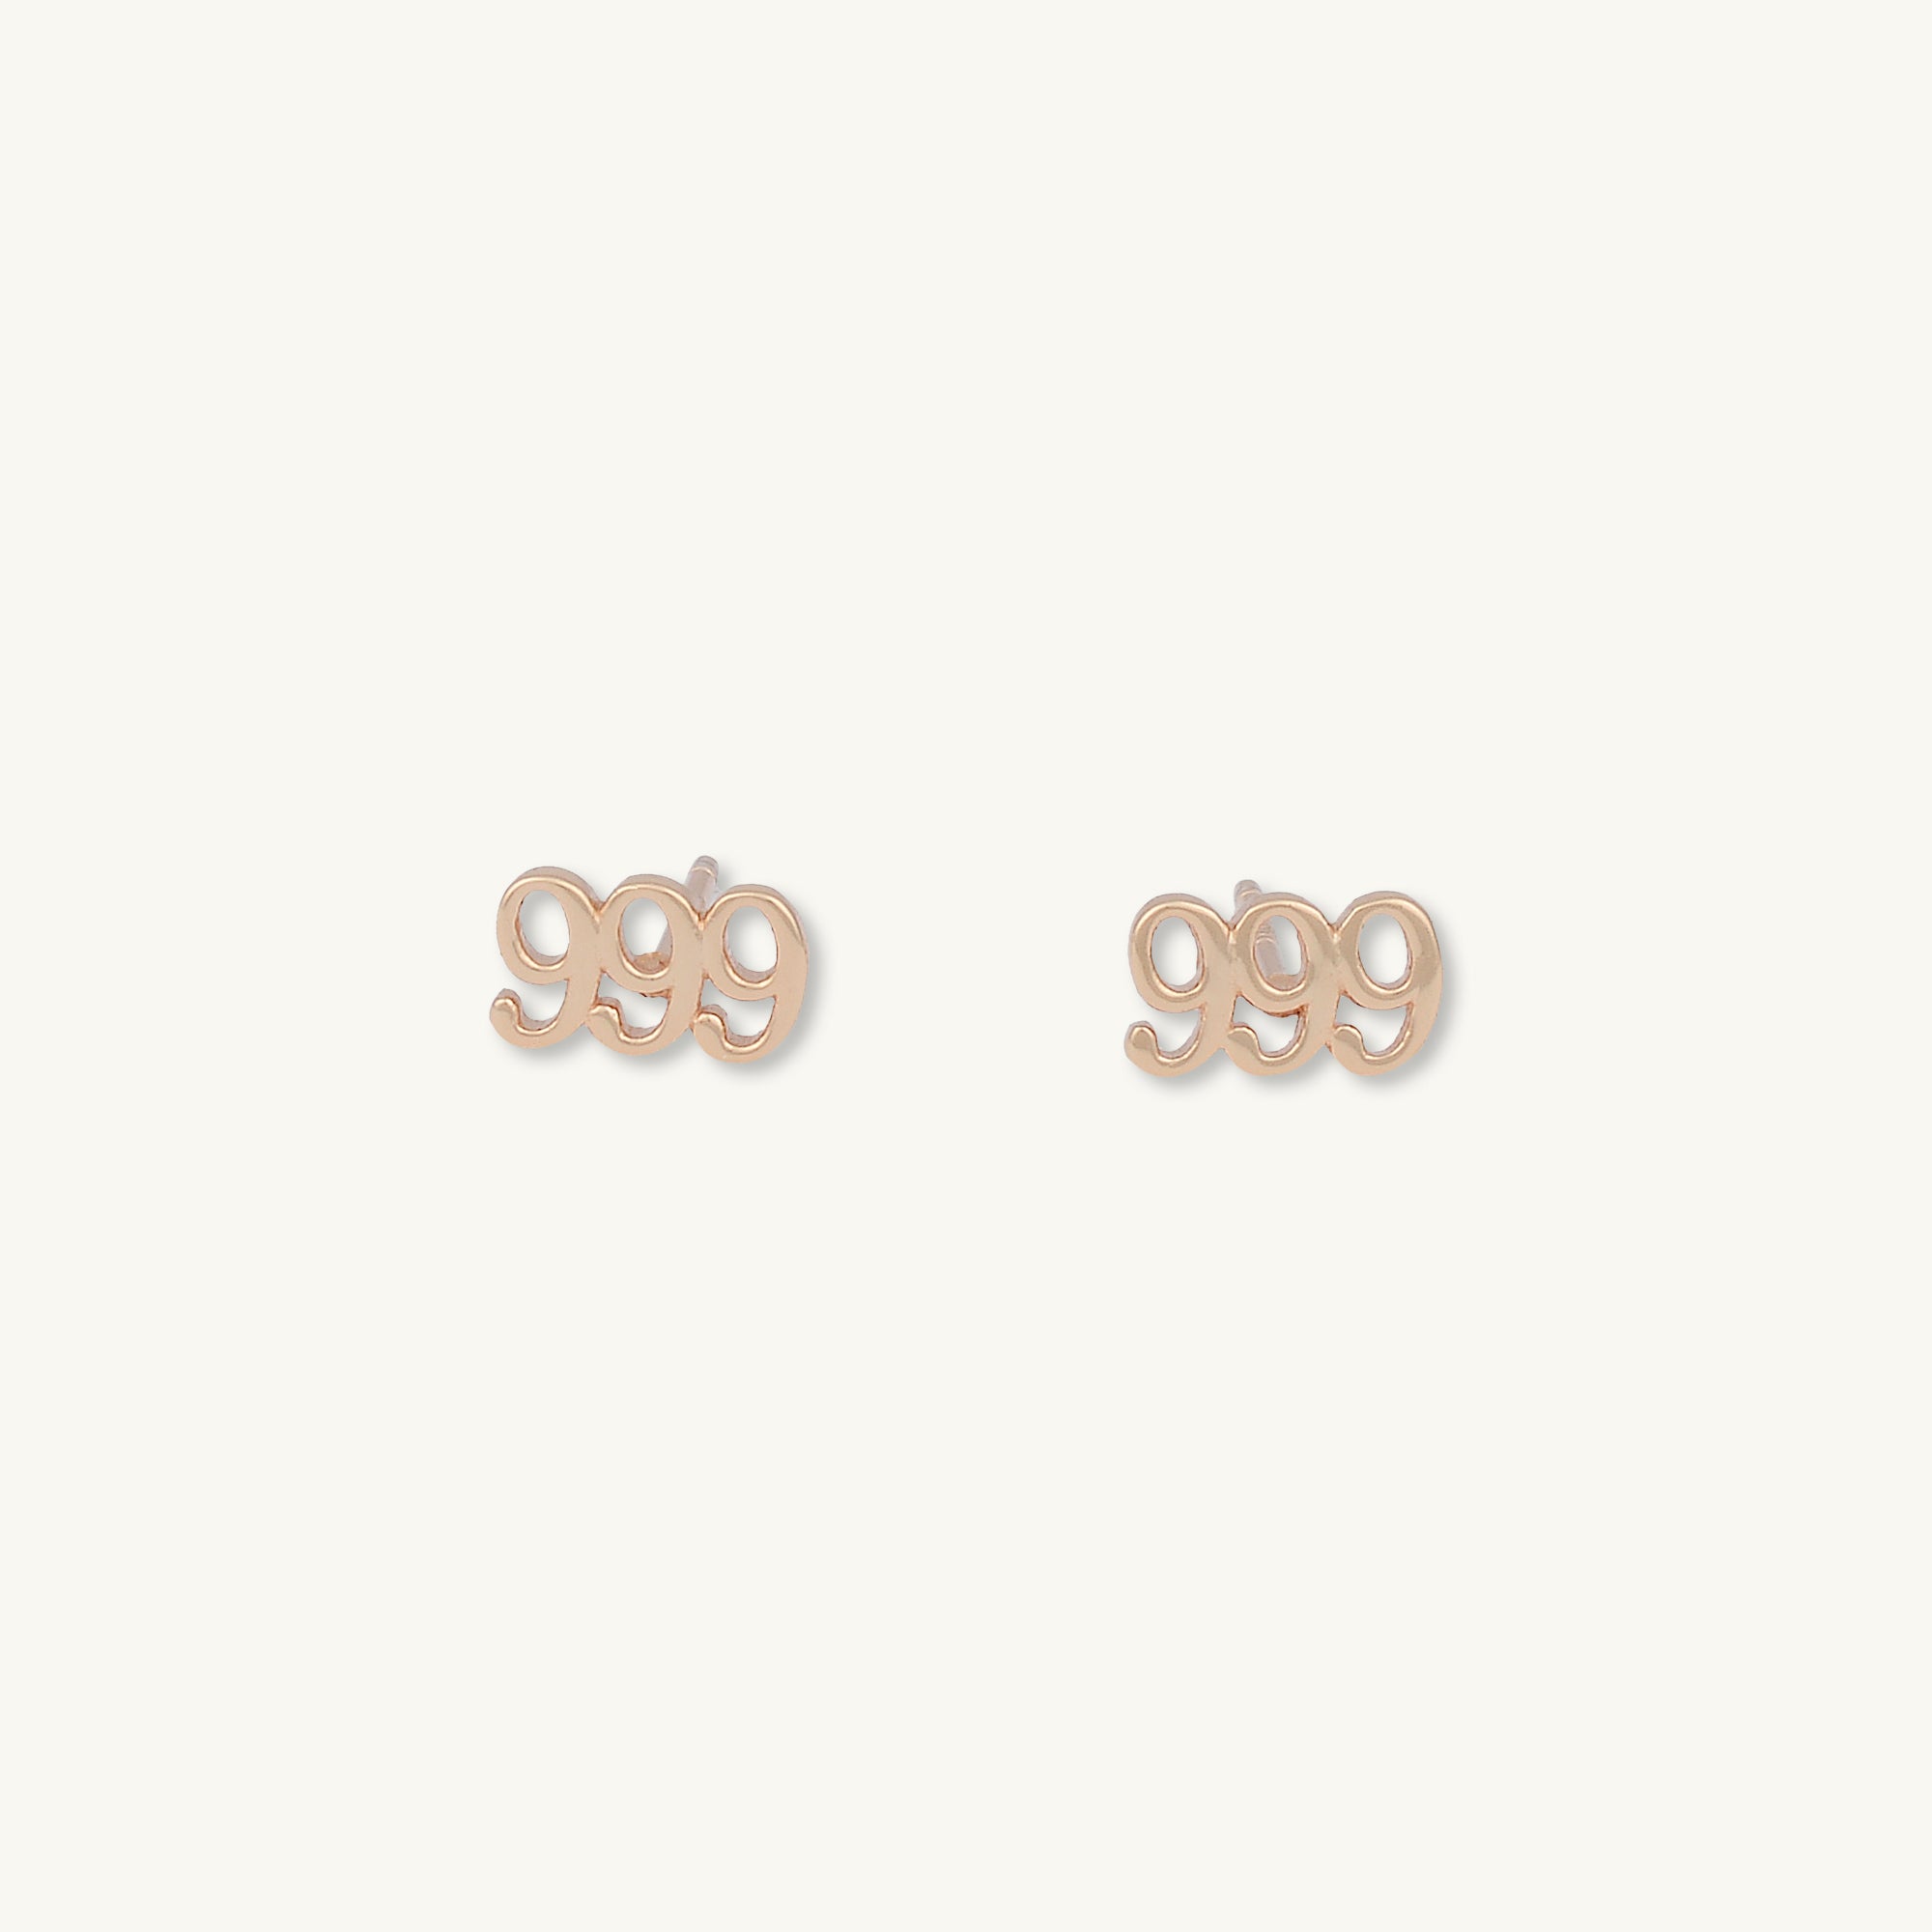 999 Angel Number Earrings